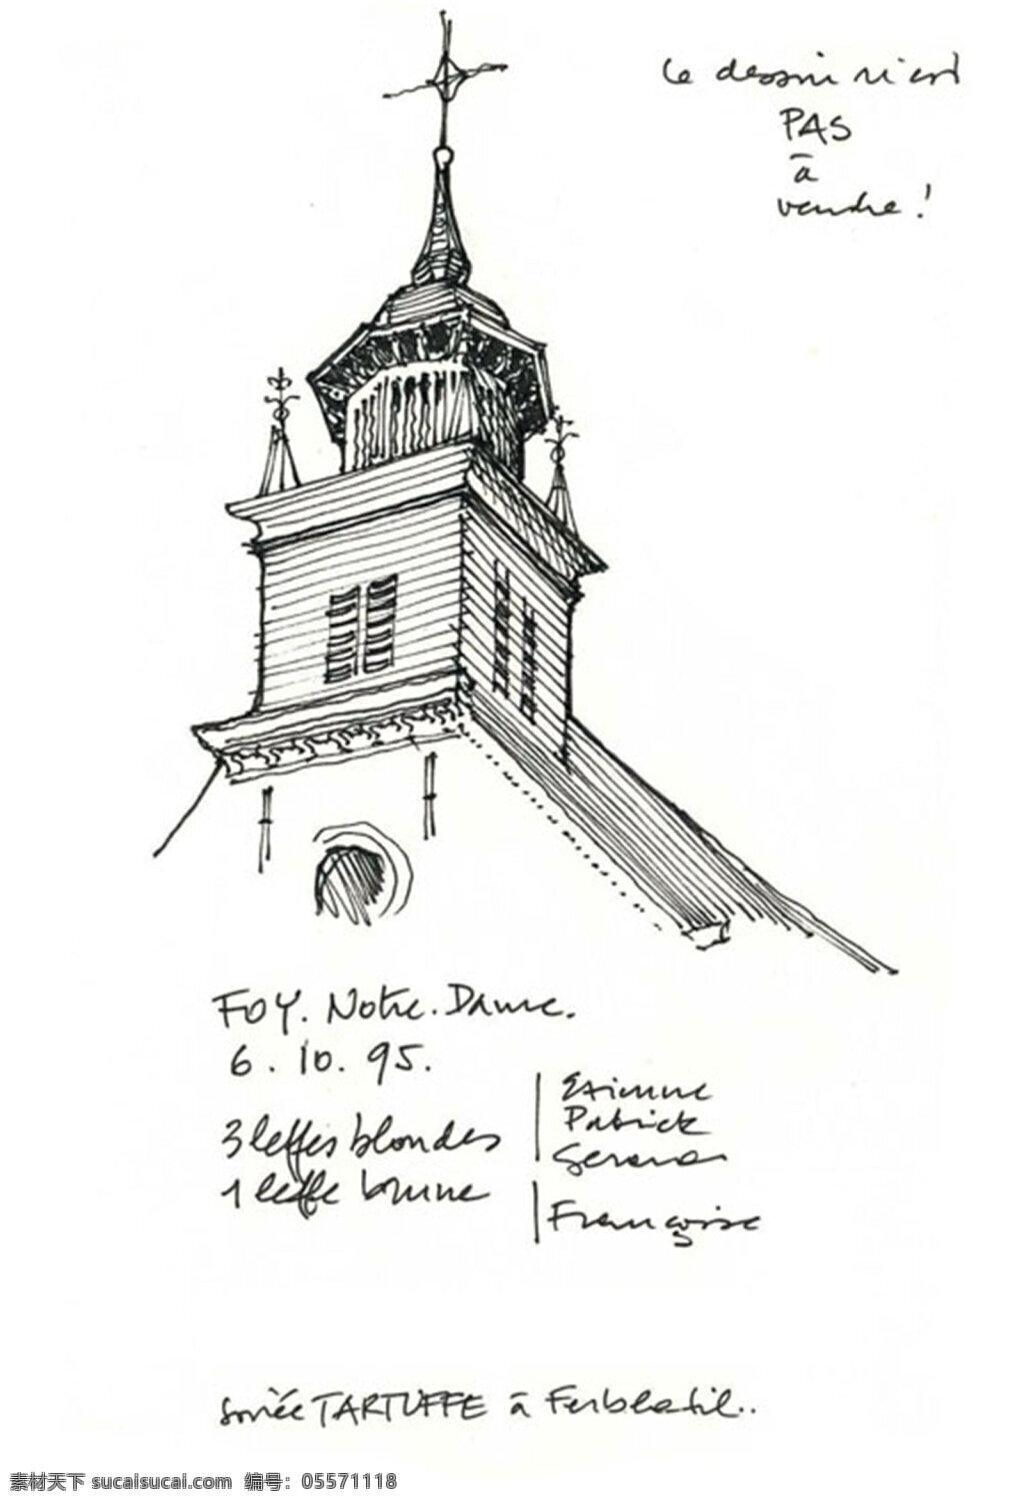 欧式 教堂 效果图 建筑 平面图 手绘图 图纸 城堡 建筑施工图 建筑平面图 欧式建筑 建筑效果图